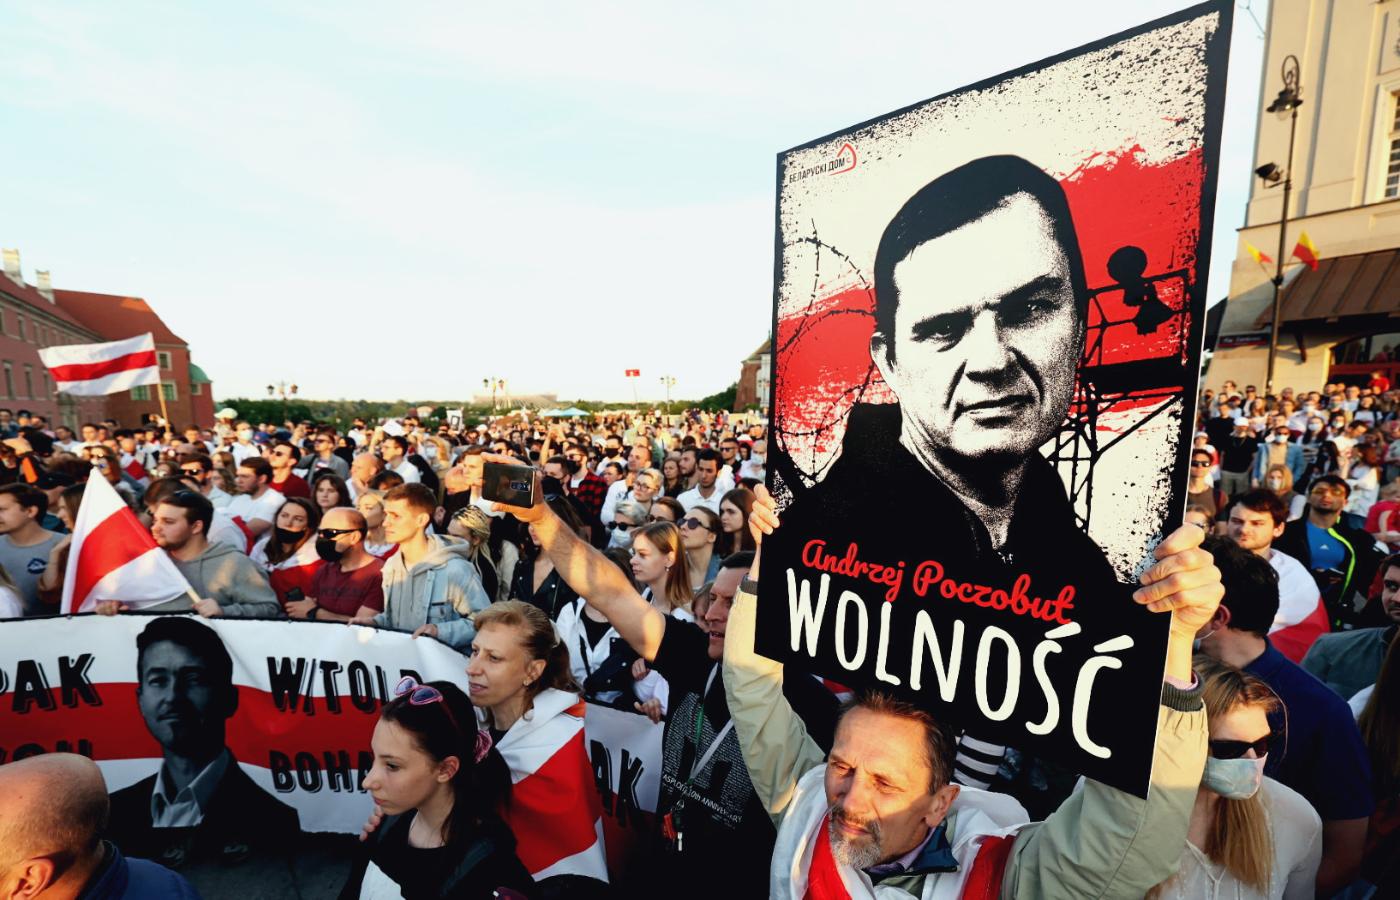 Transparenty z hasłami wzywającymi do uwolnienia Andrzeja Poczobuta. Spotkanie ze Swietłaną Cichanouską w Warszawie, czerwiec 2021 r.